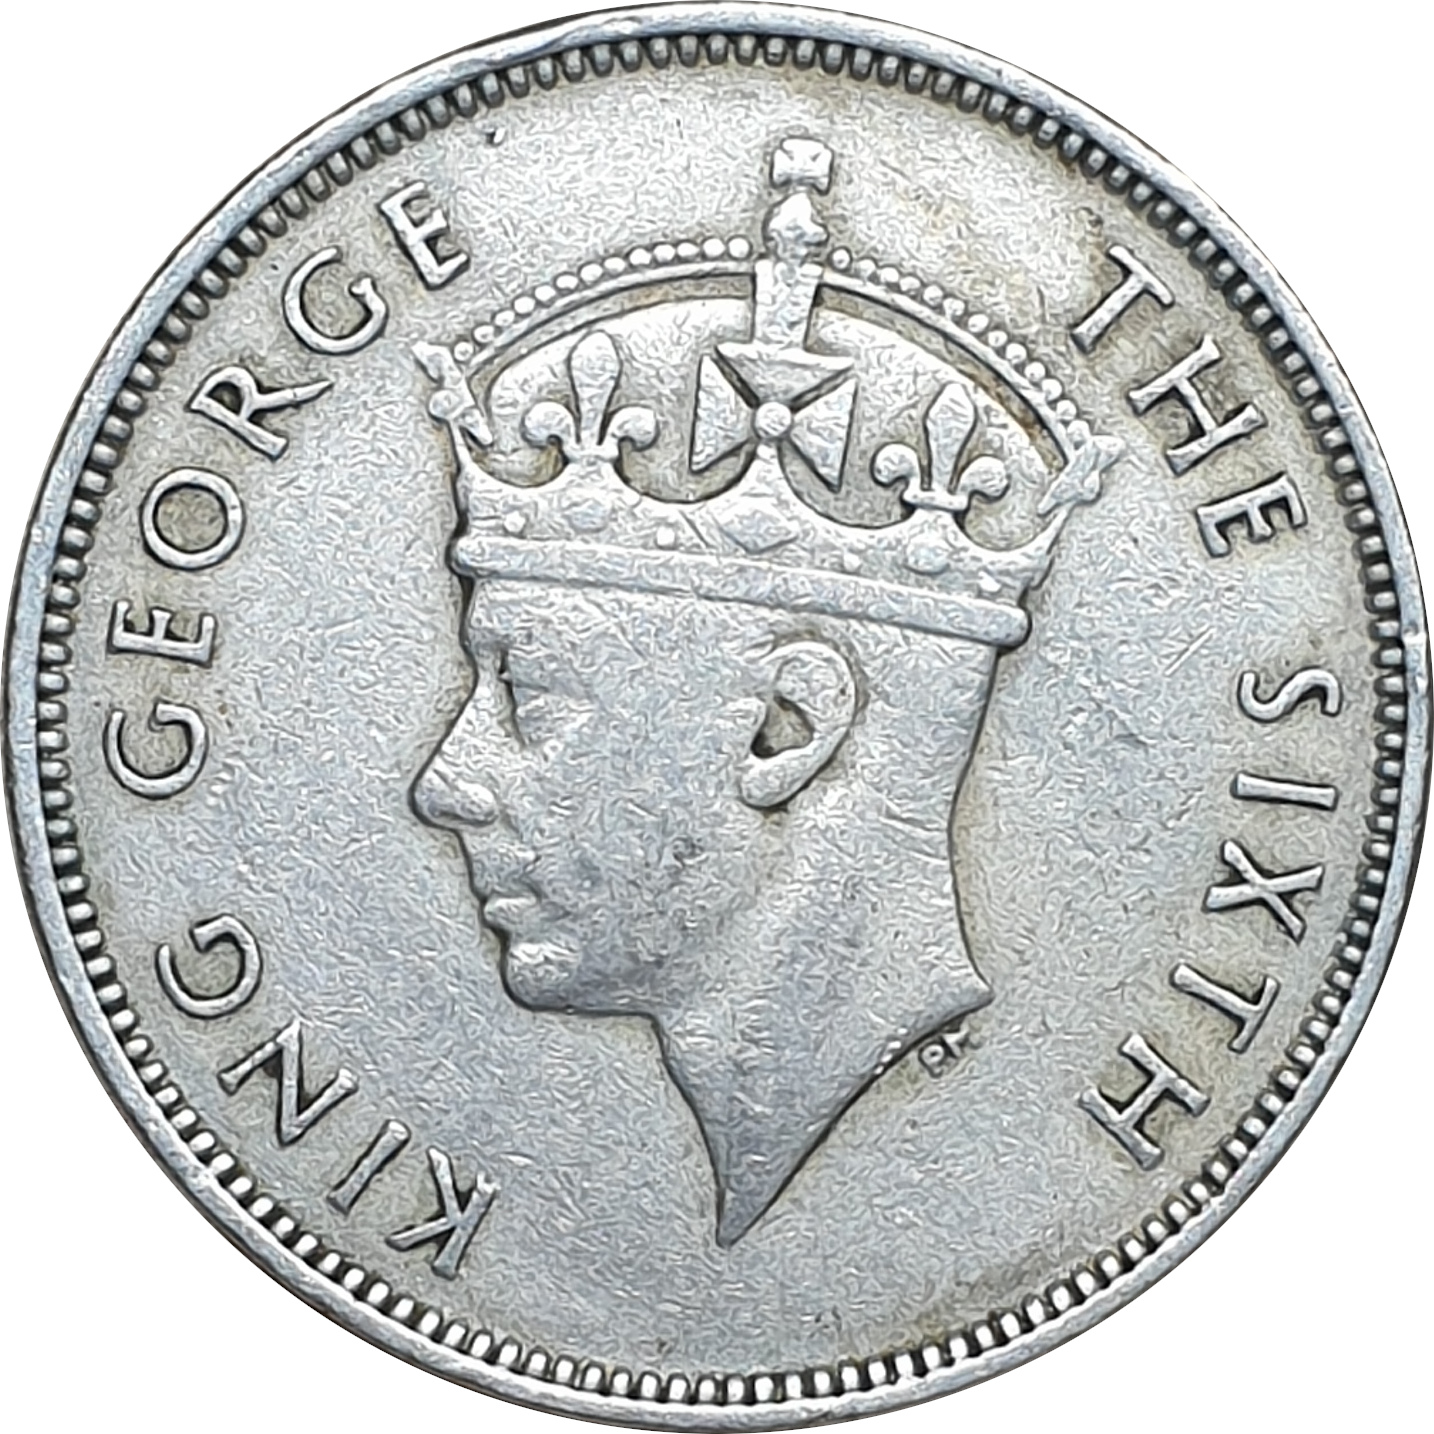 1 rupee - George VI